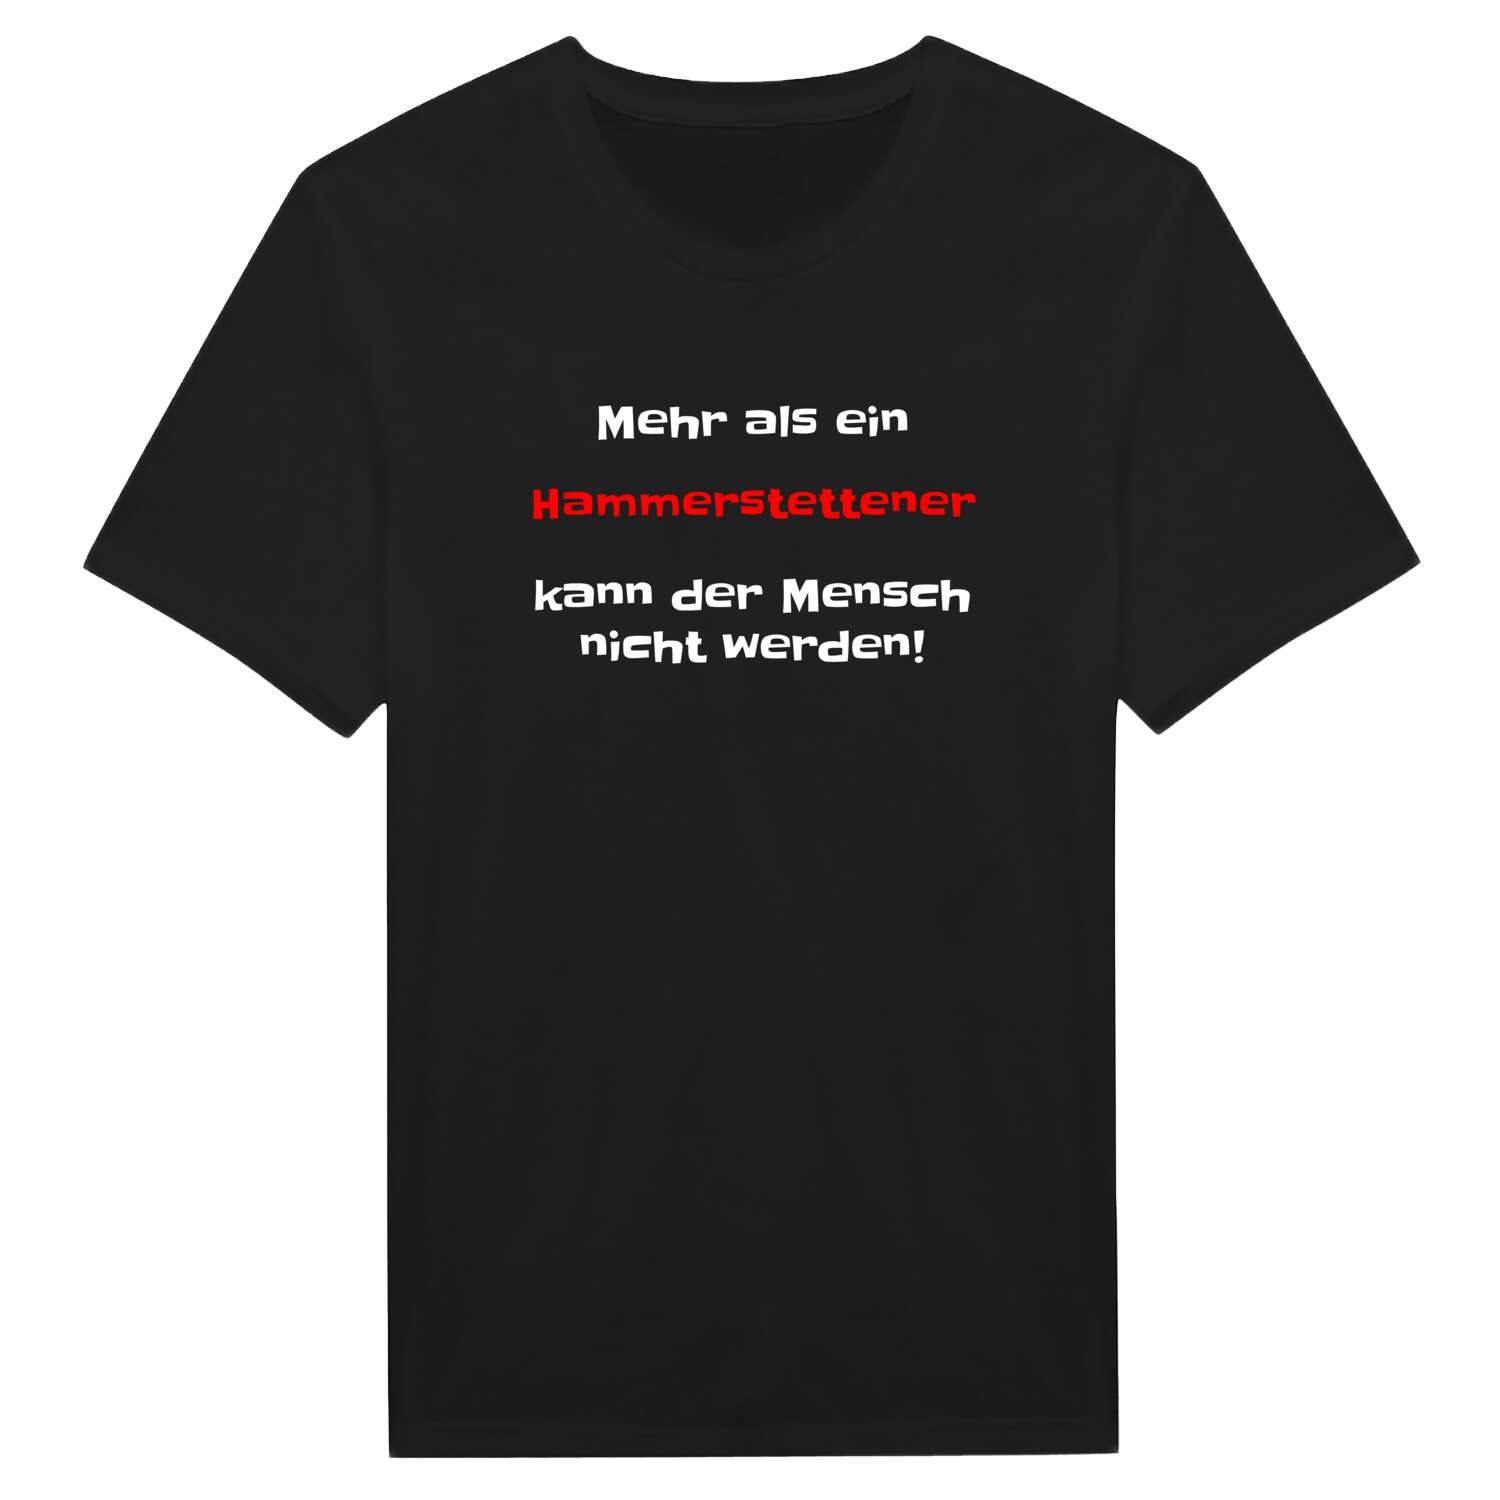 Hammerstetten T-Shirt »Mehr als ein«